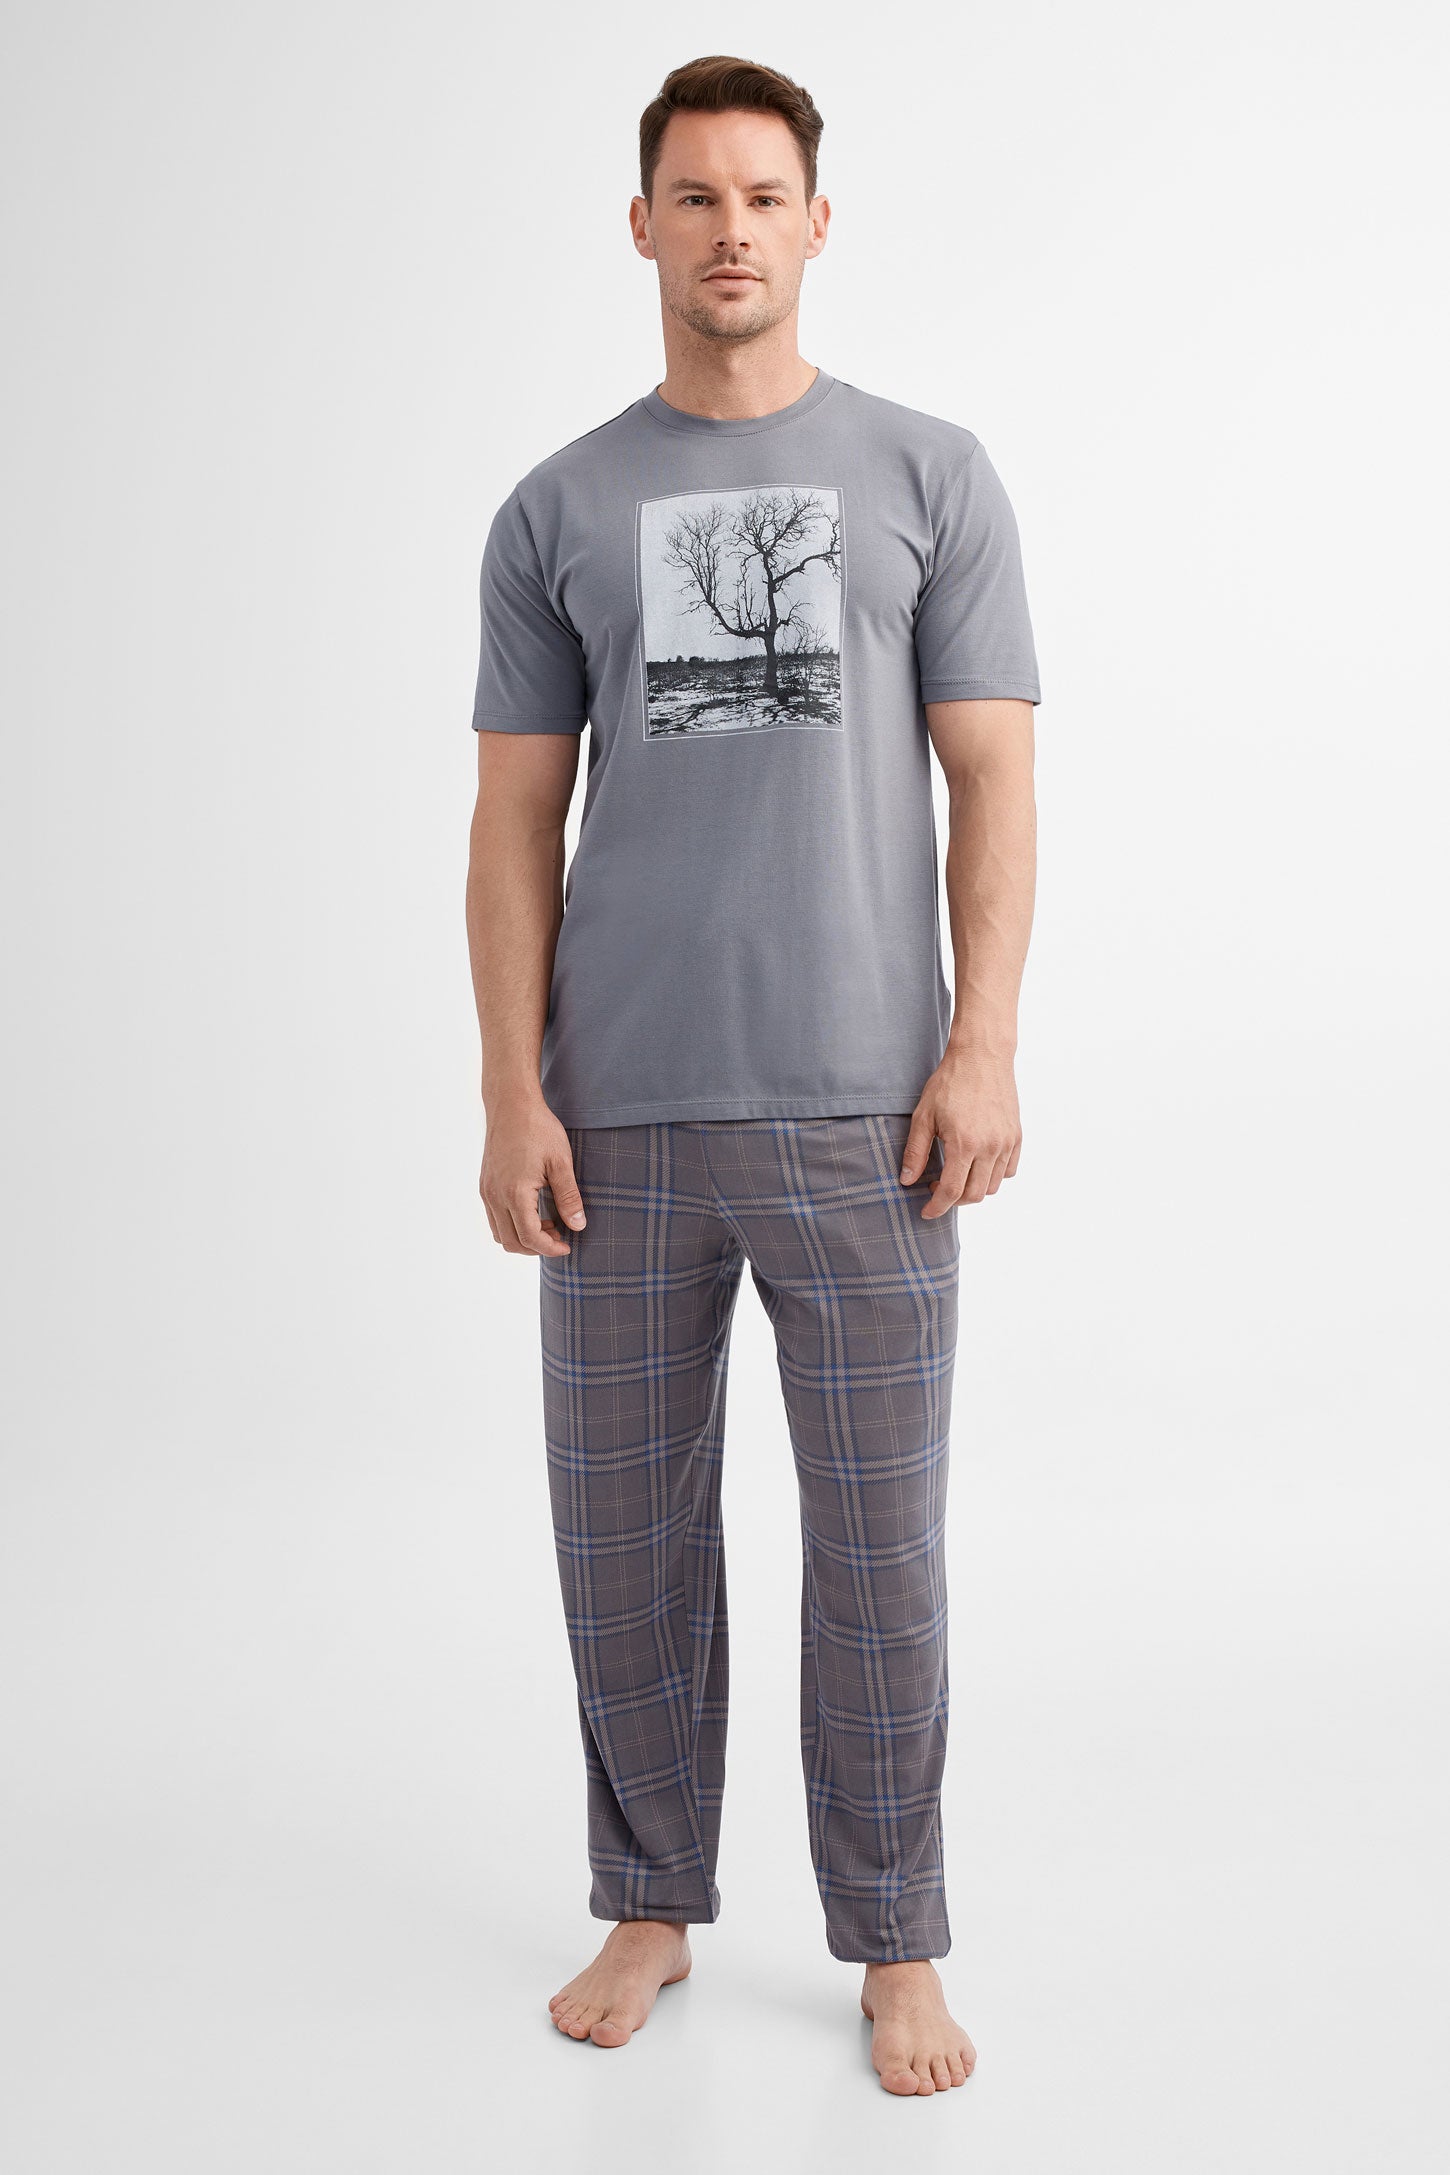 Duos futés, T-shirt pyjama en Modal, 2/40$ - Homme && CHARBON